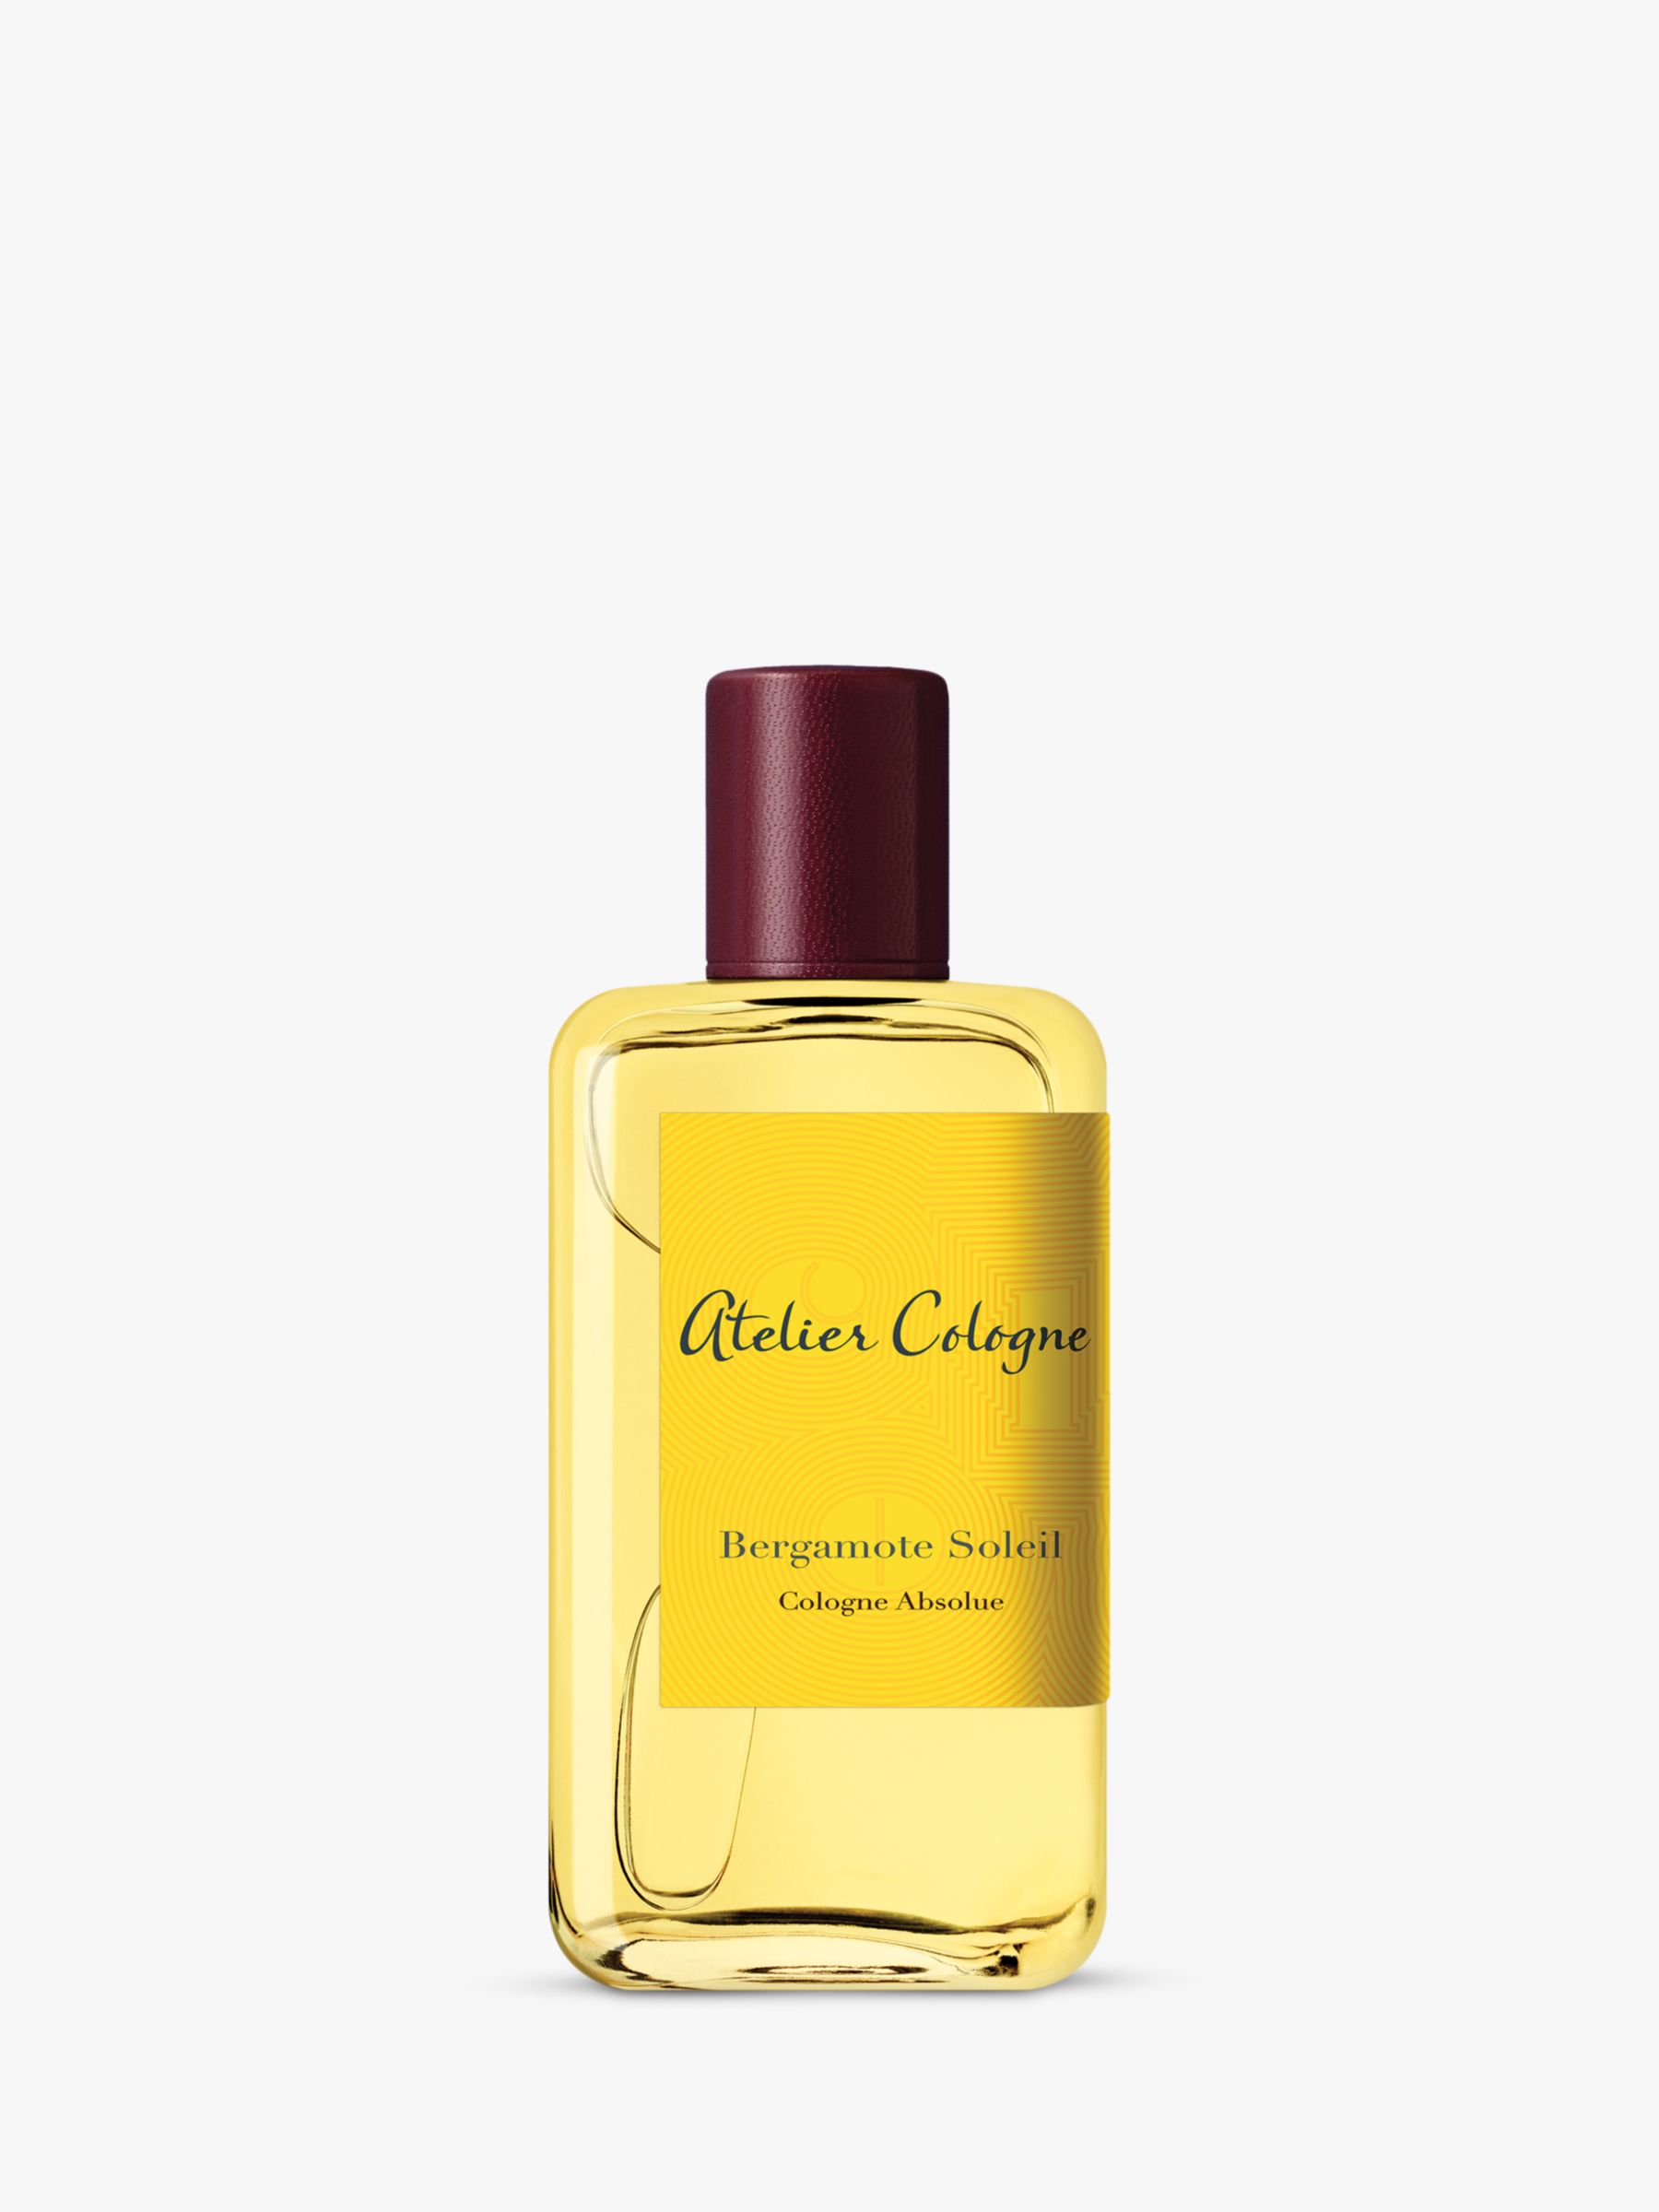 Atelier Cologne Bergamote Soleil Eau de Parfum at John Lewis & Partners